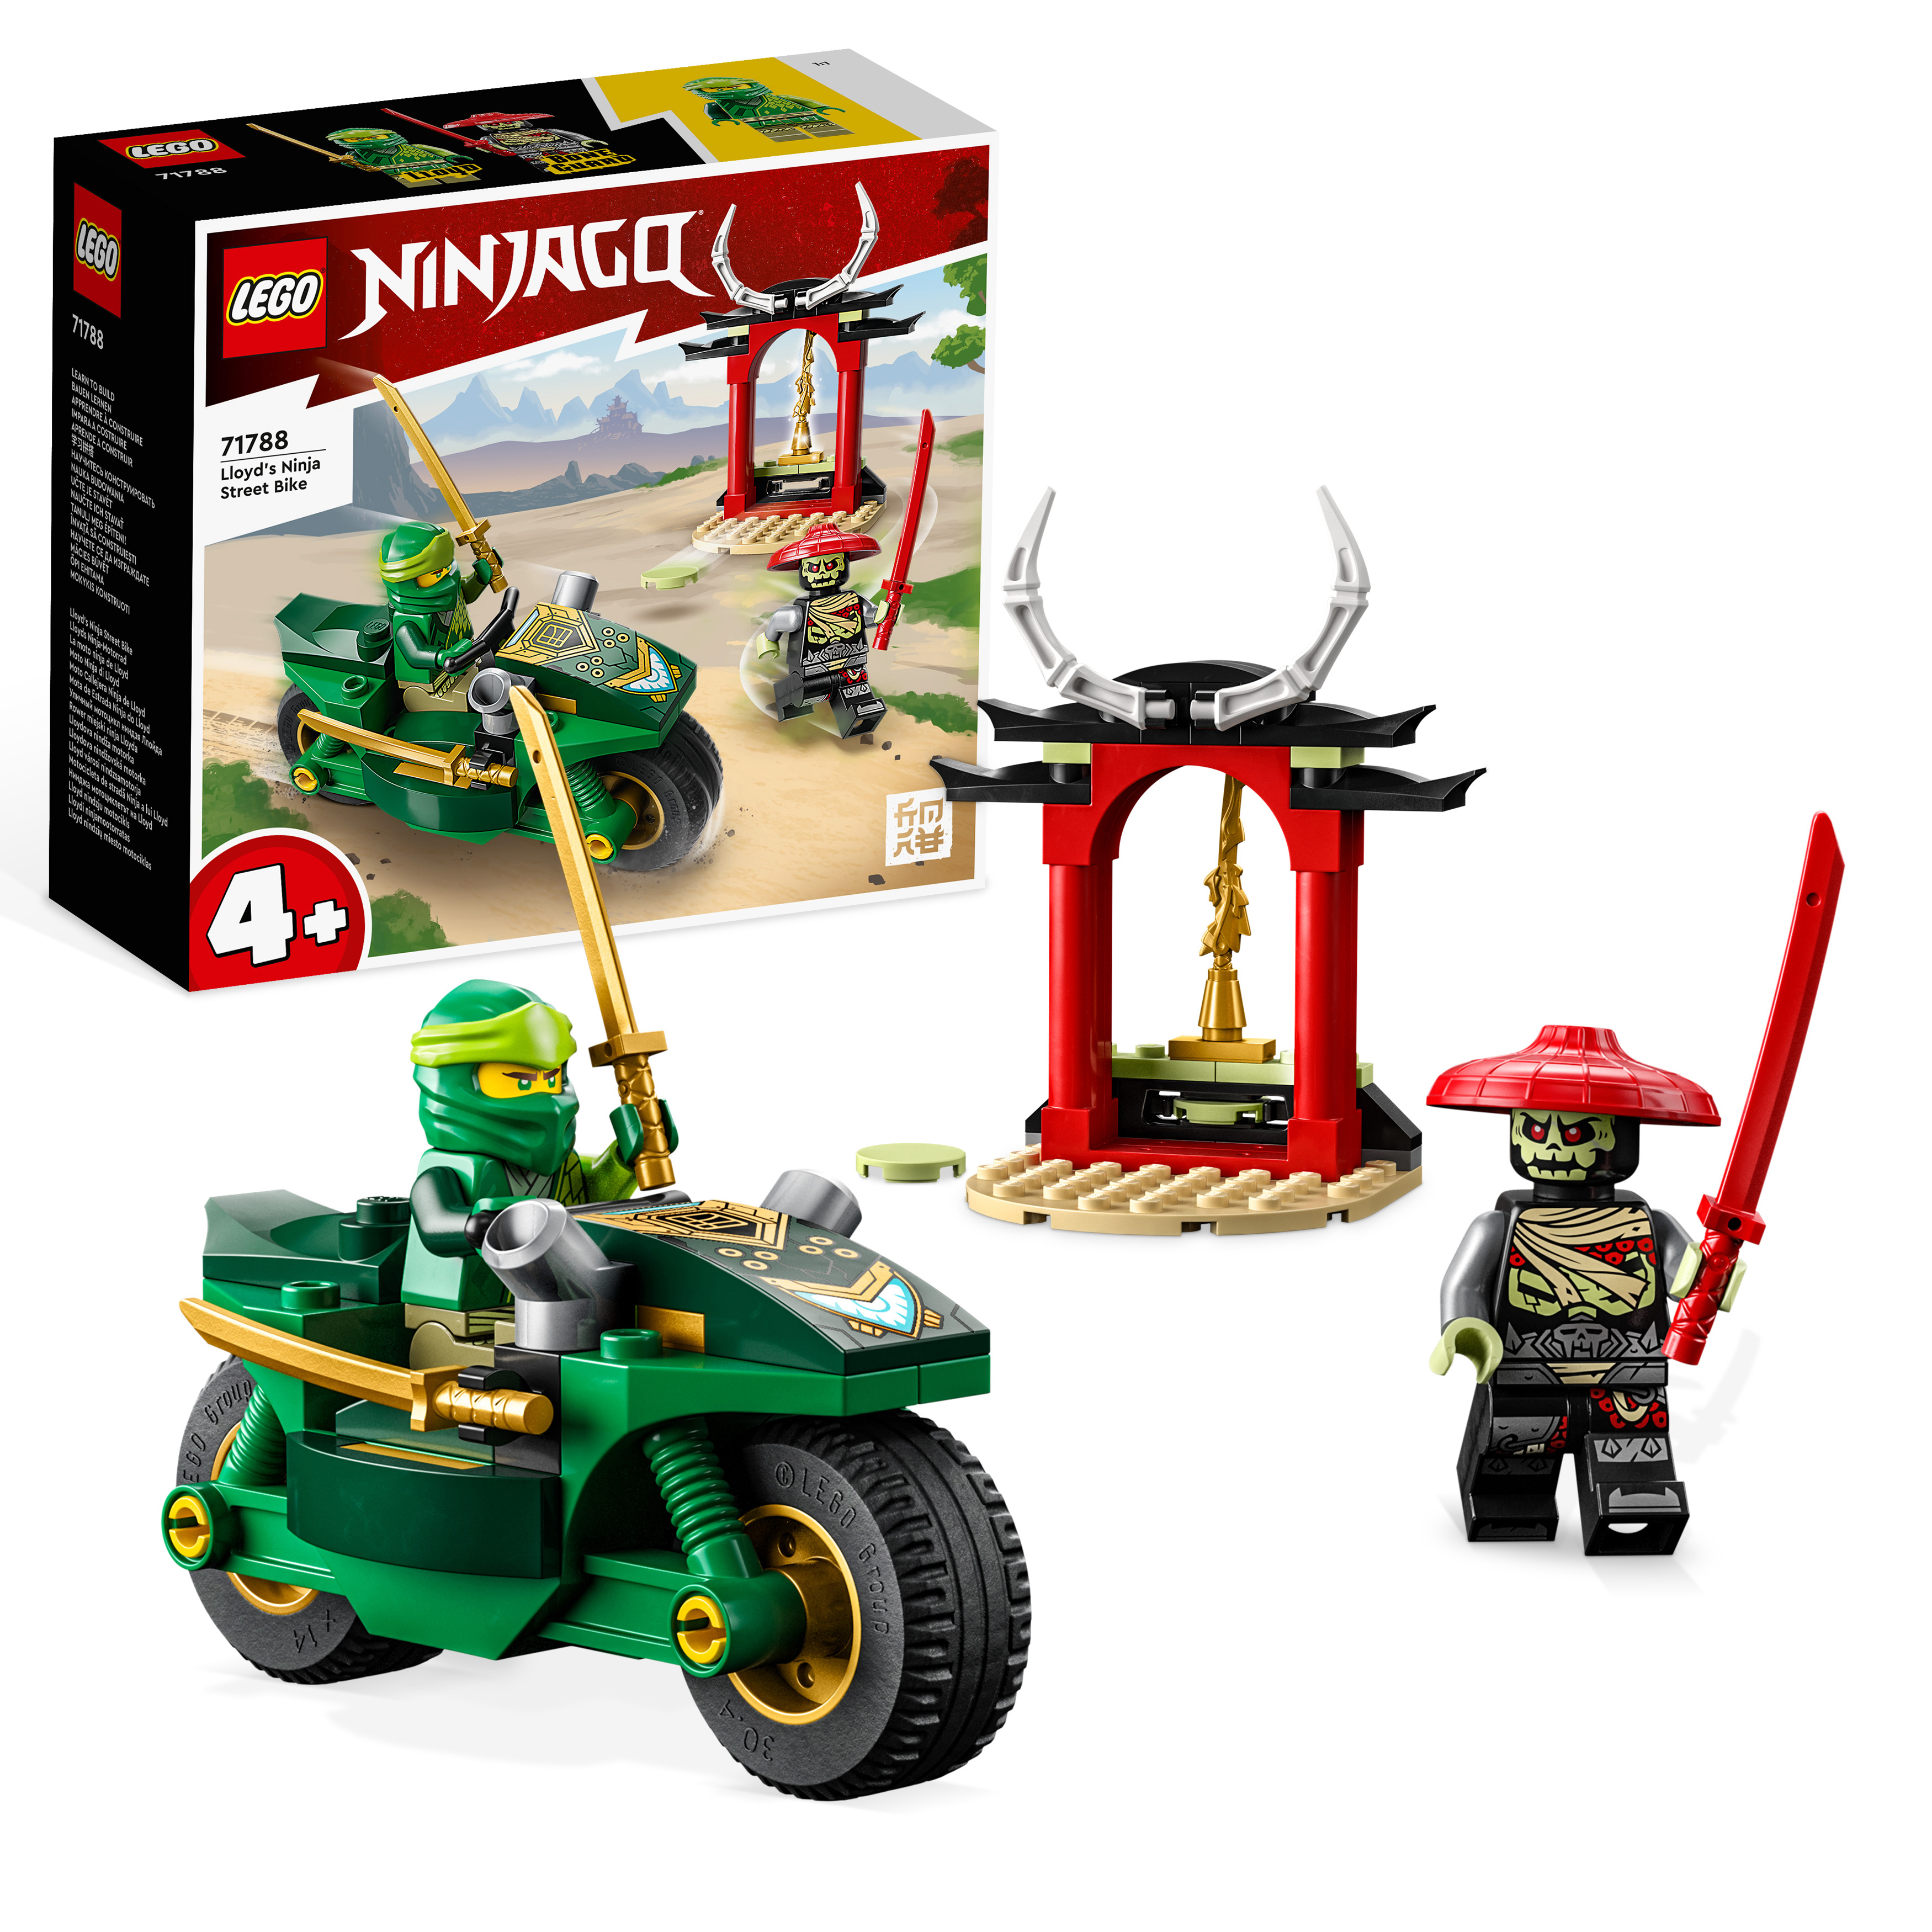 LEGO NINJAGO Lloyds Mehrfarbig Bausatz, 71788 Ninja-Motorrad